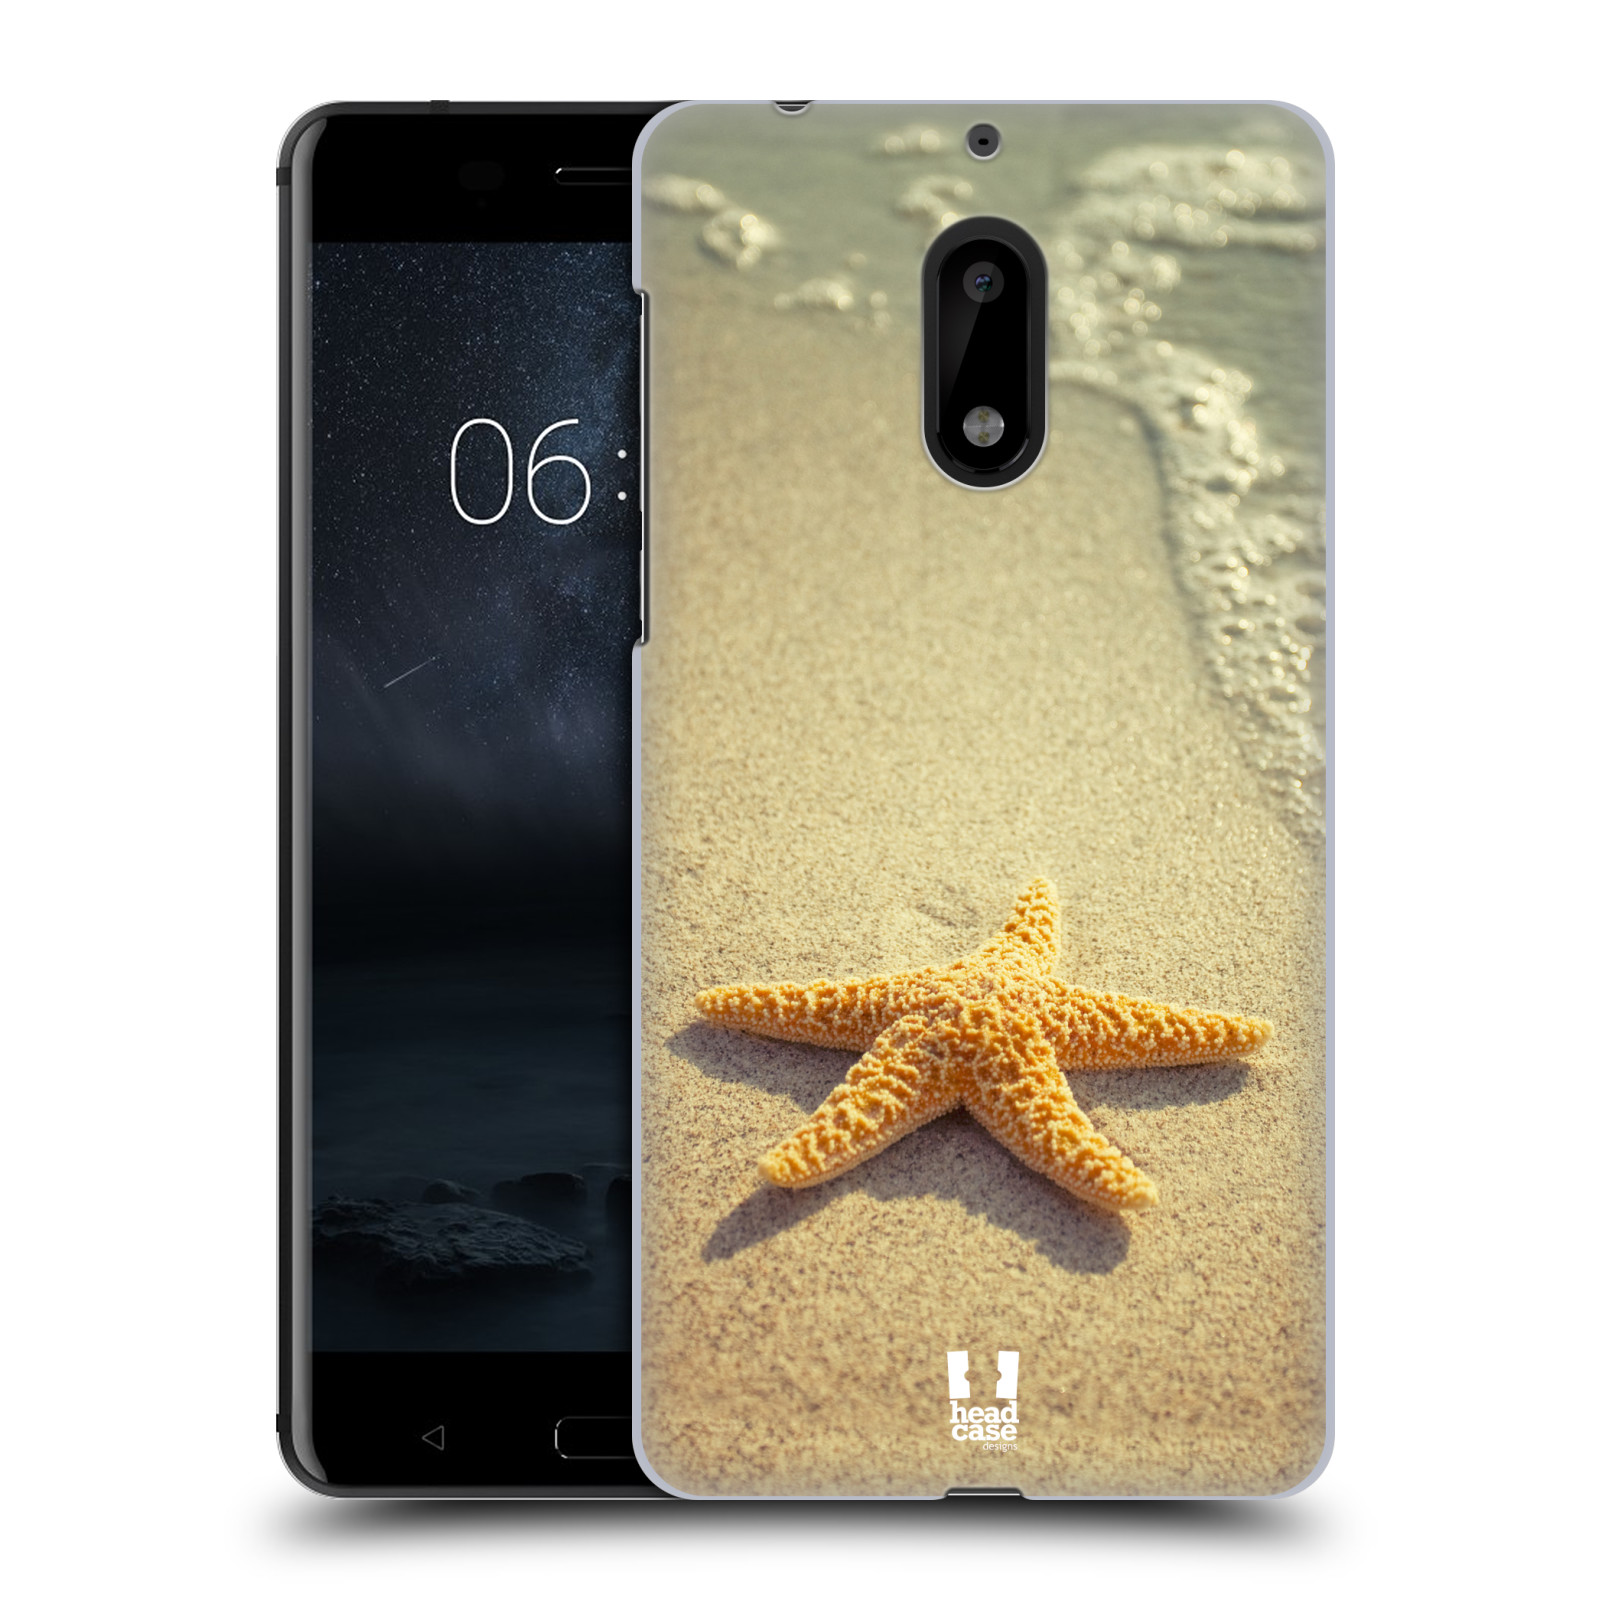 HEAD CASE plastový obal na mobil Nokia 6 vzor slavná zvířata foto hvězda na břehu